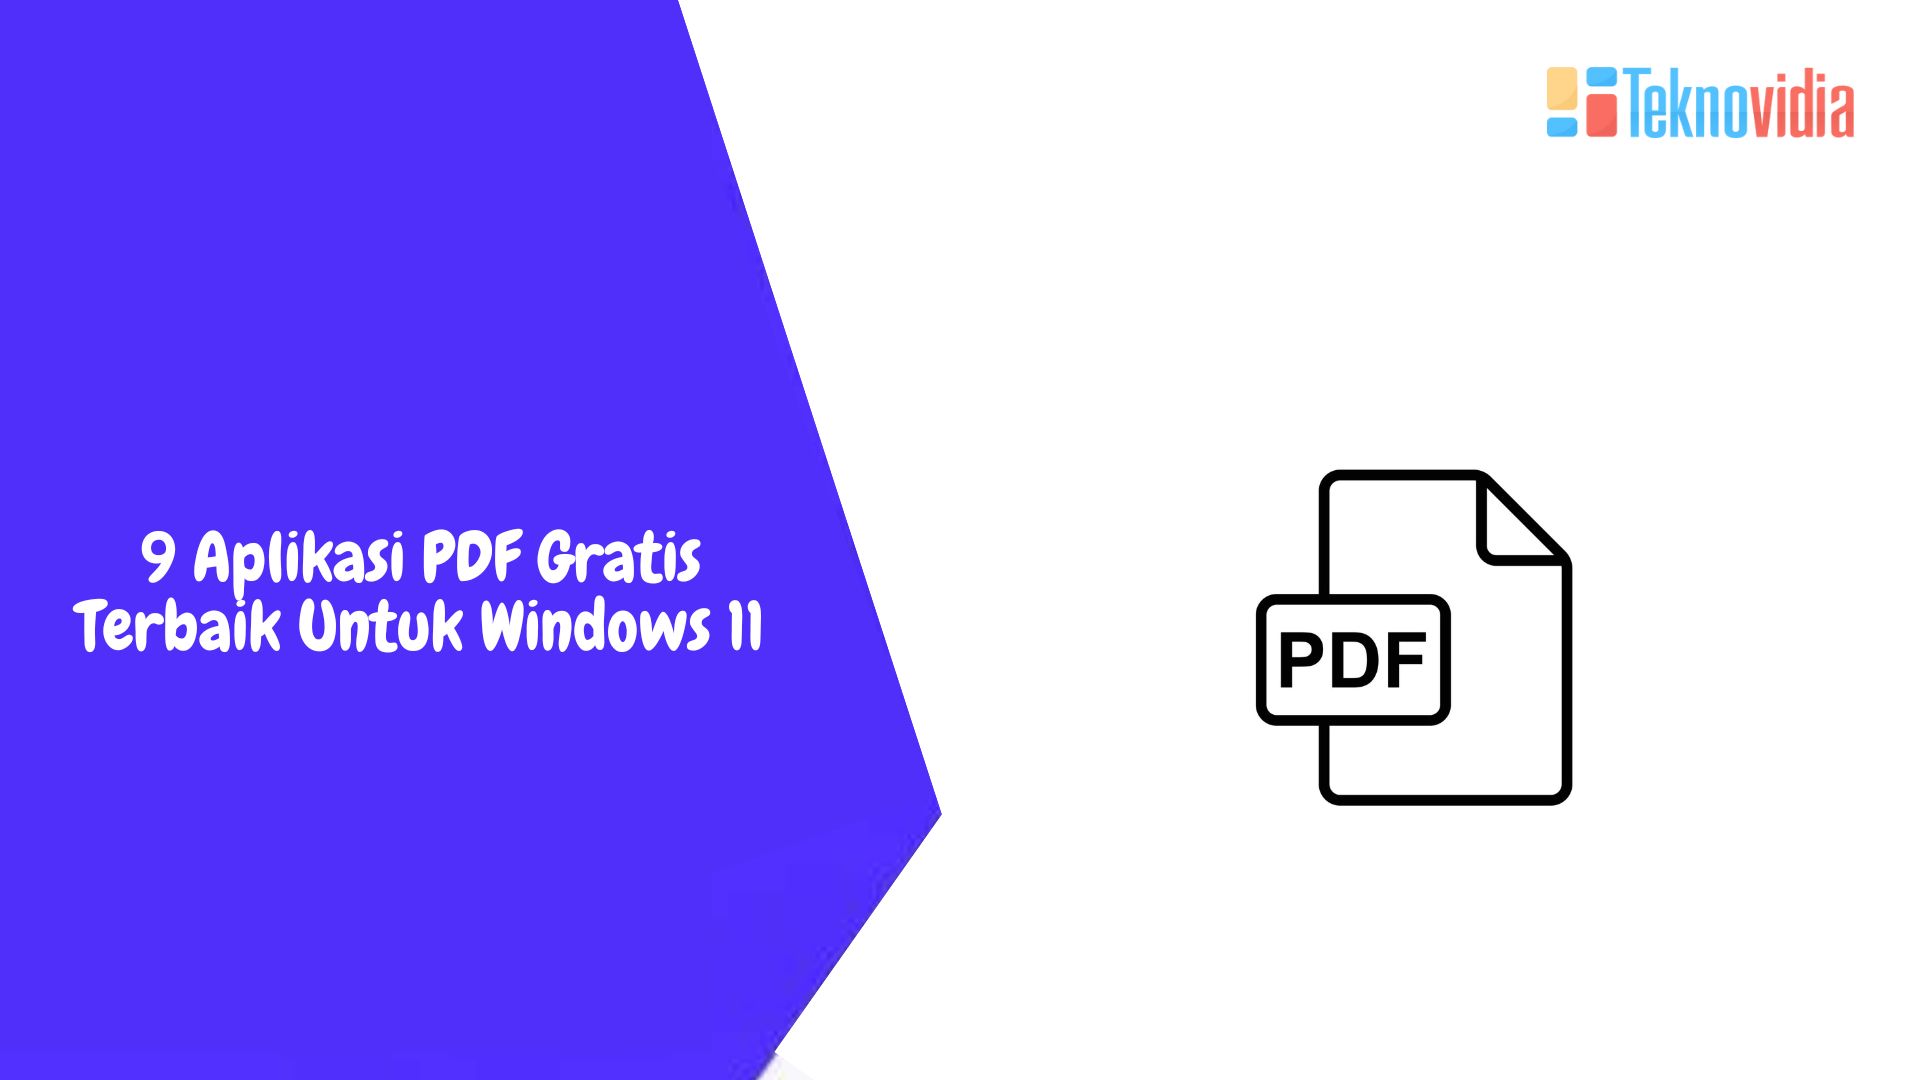 9 Aplikasi PDF Gratis Terbaik Untuk Windows 11